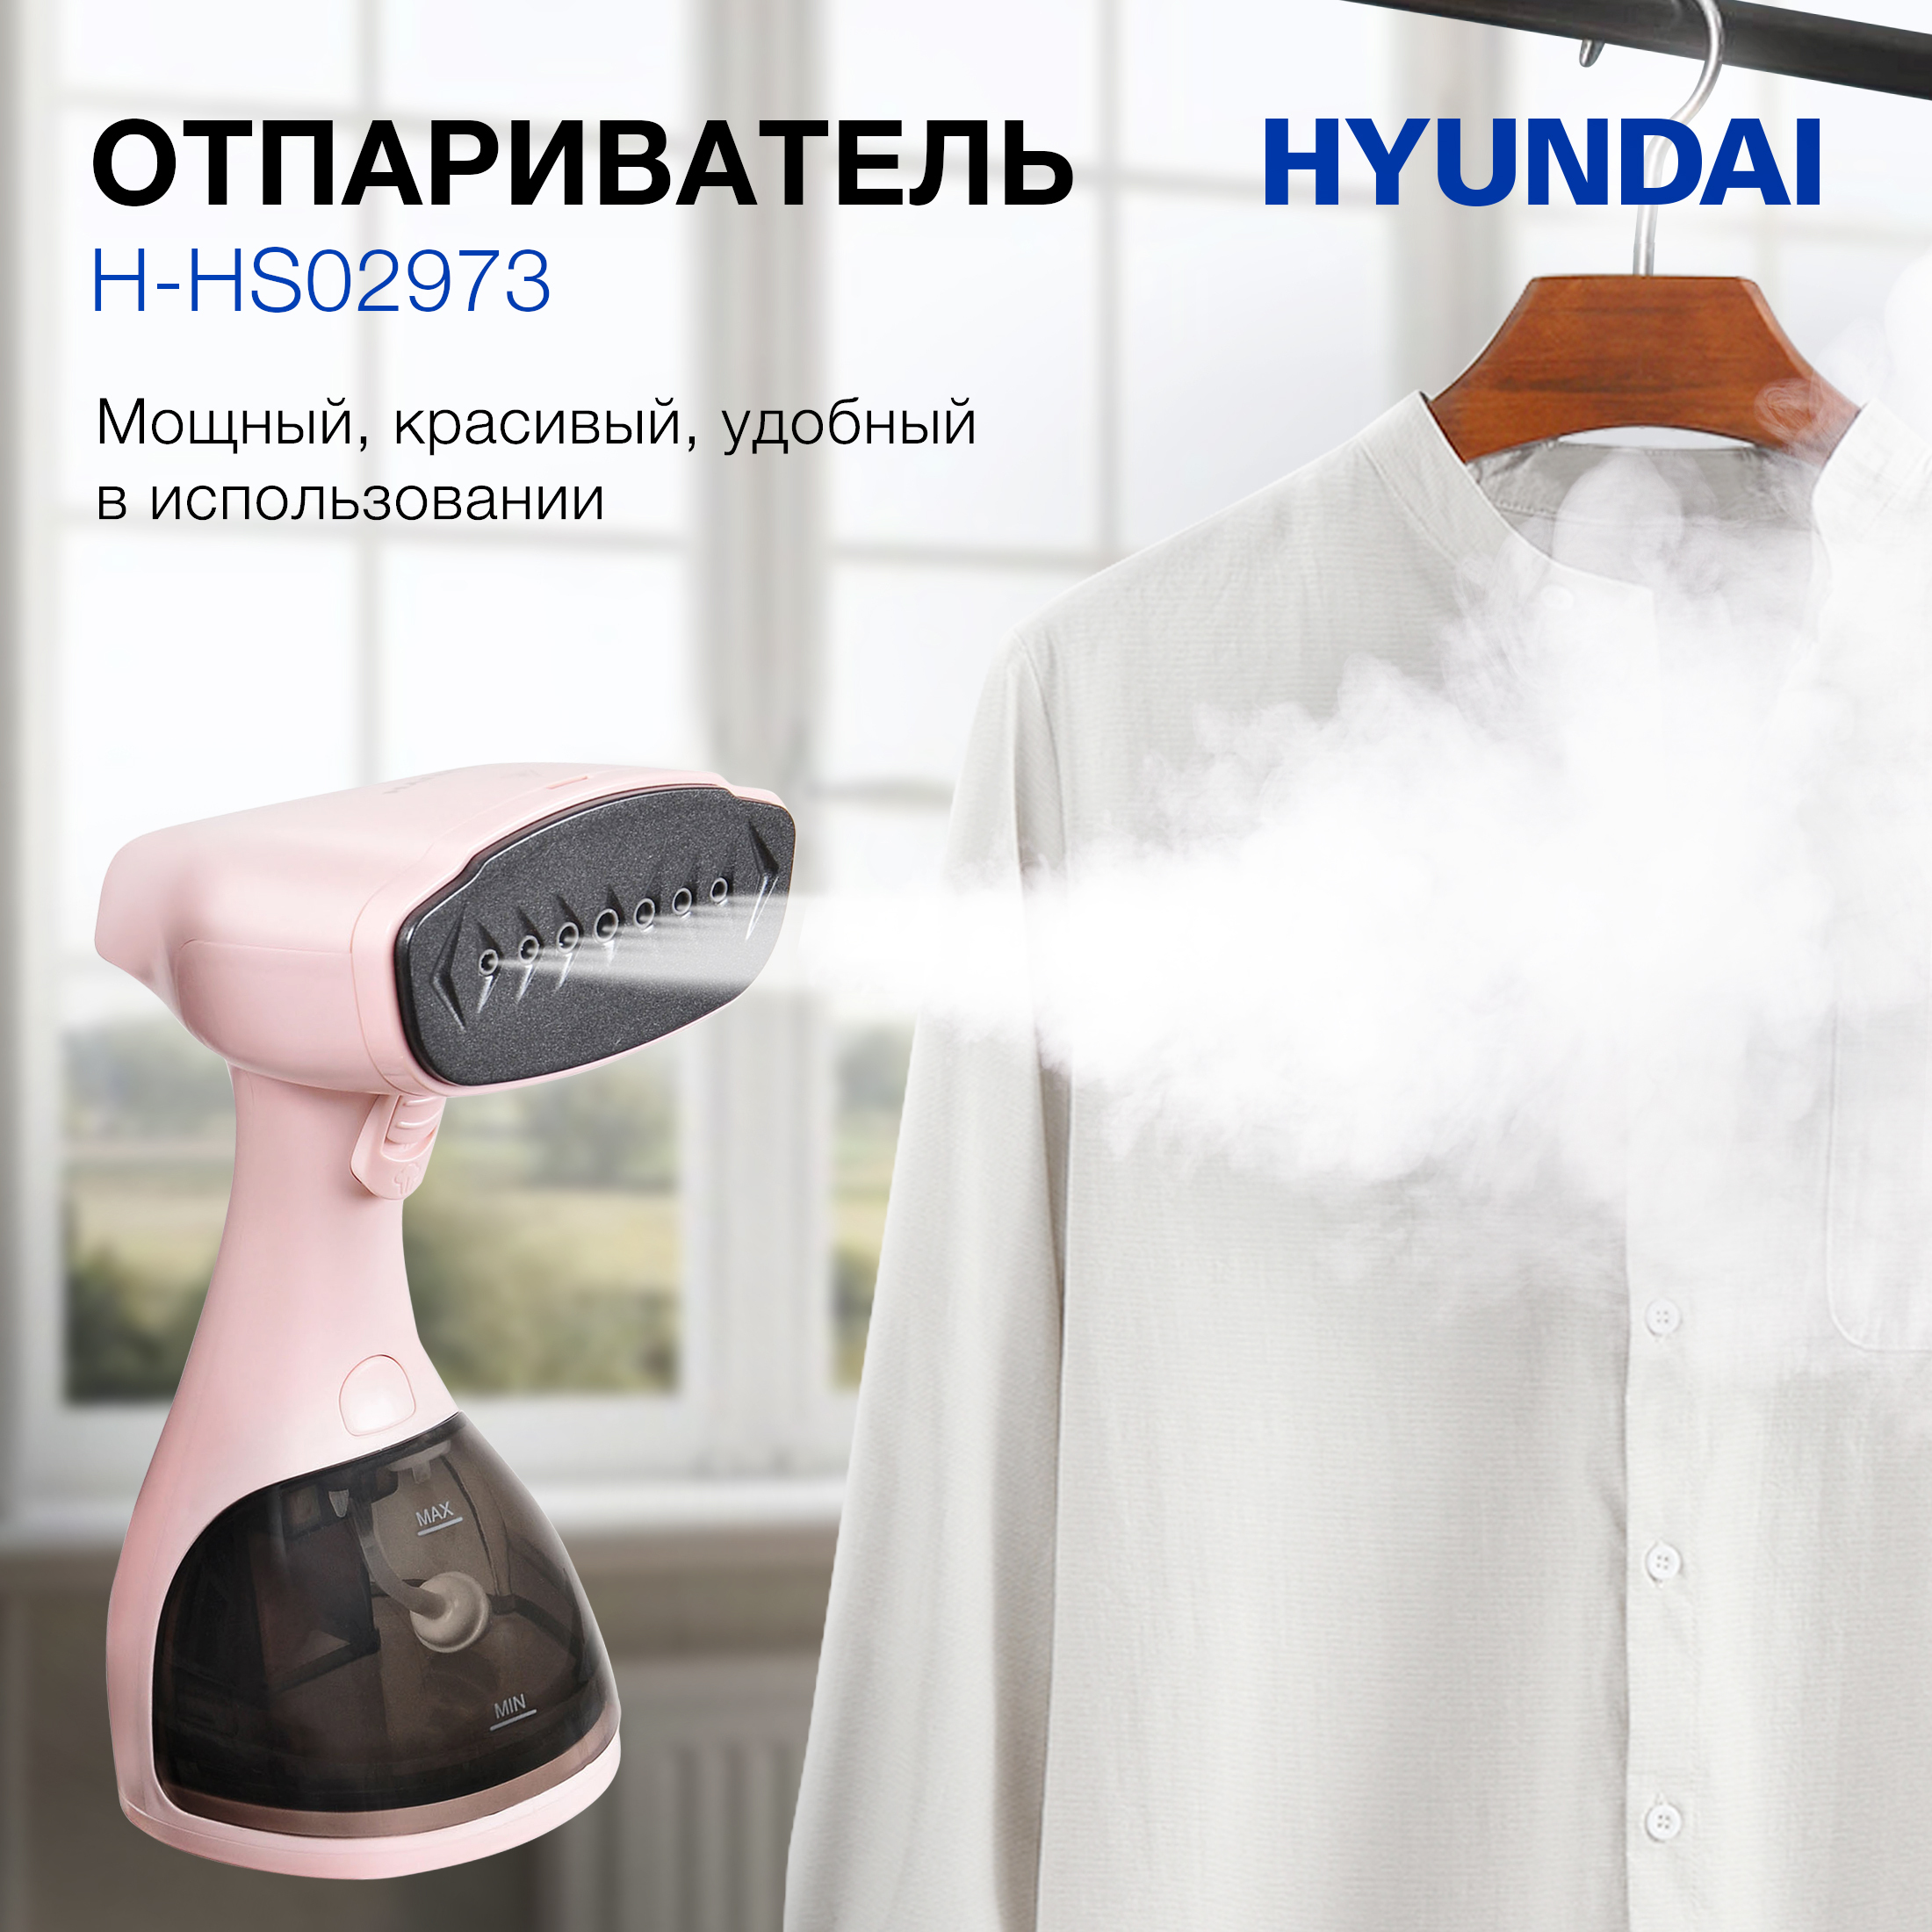 Ручной Отпариватель Hyundai H-Hs02973 Pink